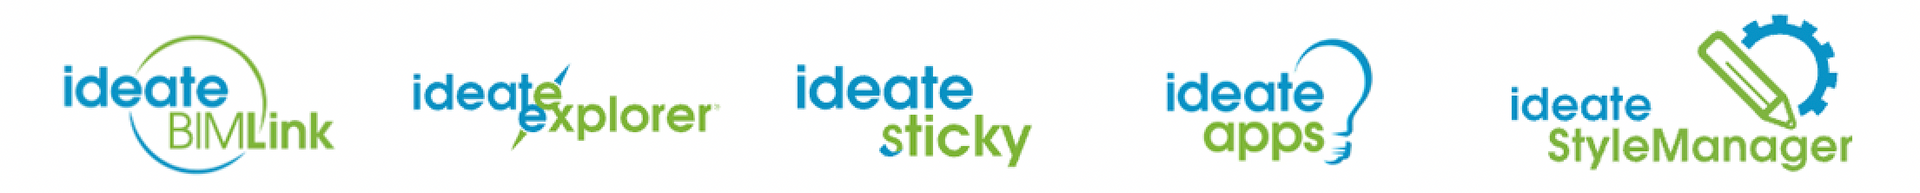 Ideate Sticky Logo